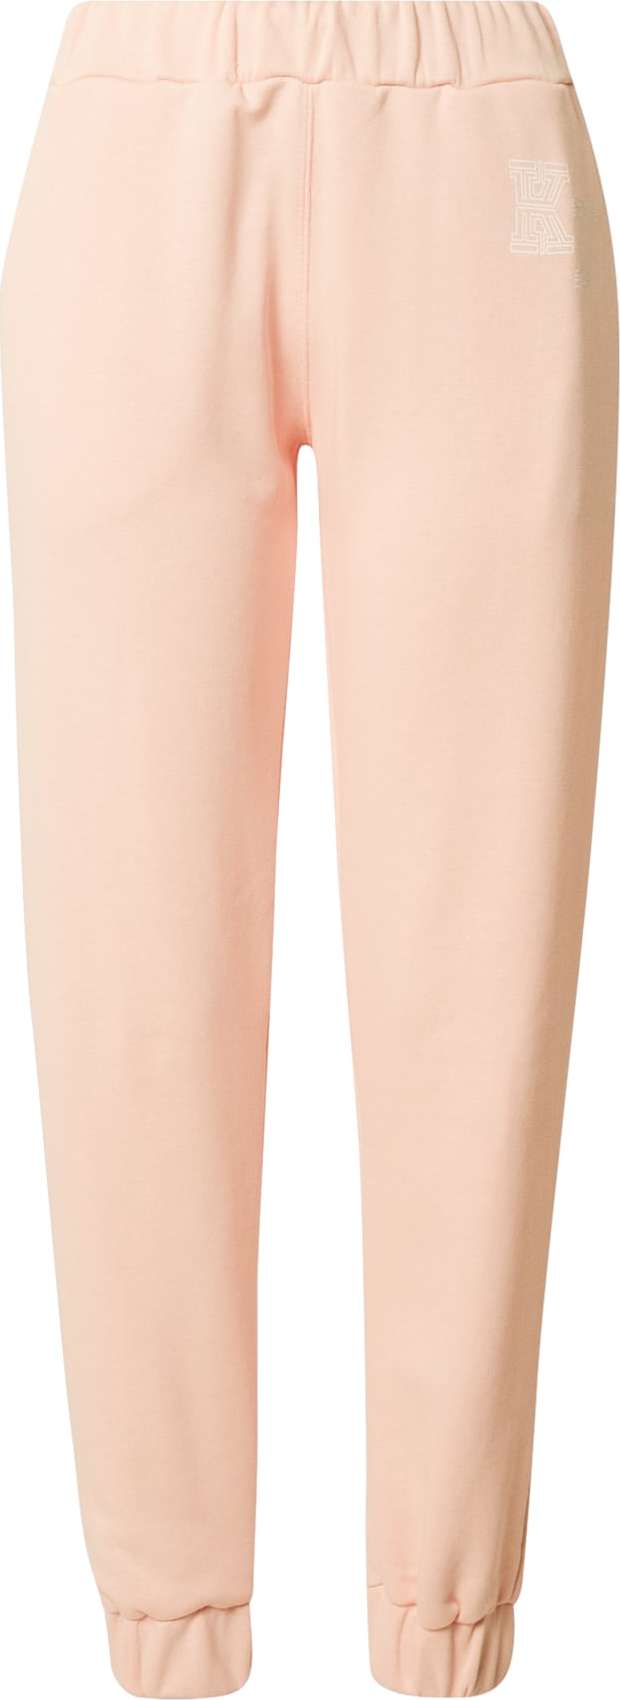 KENDALL + KYLIE Kalhoty světle růžová / bílá